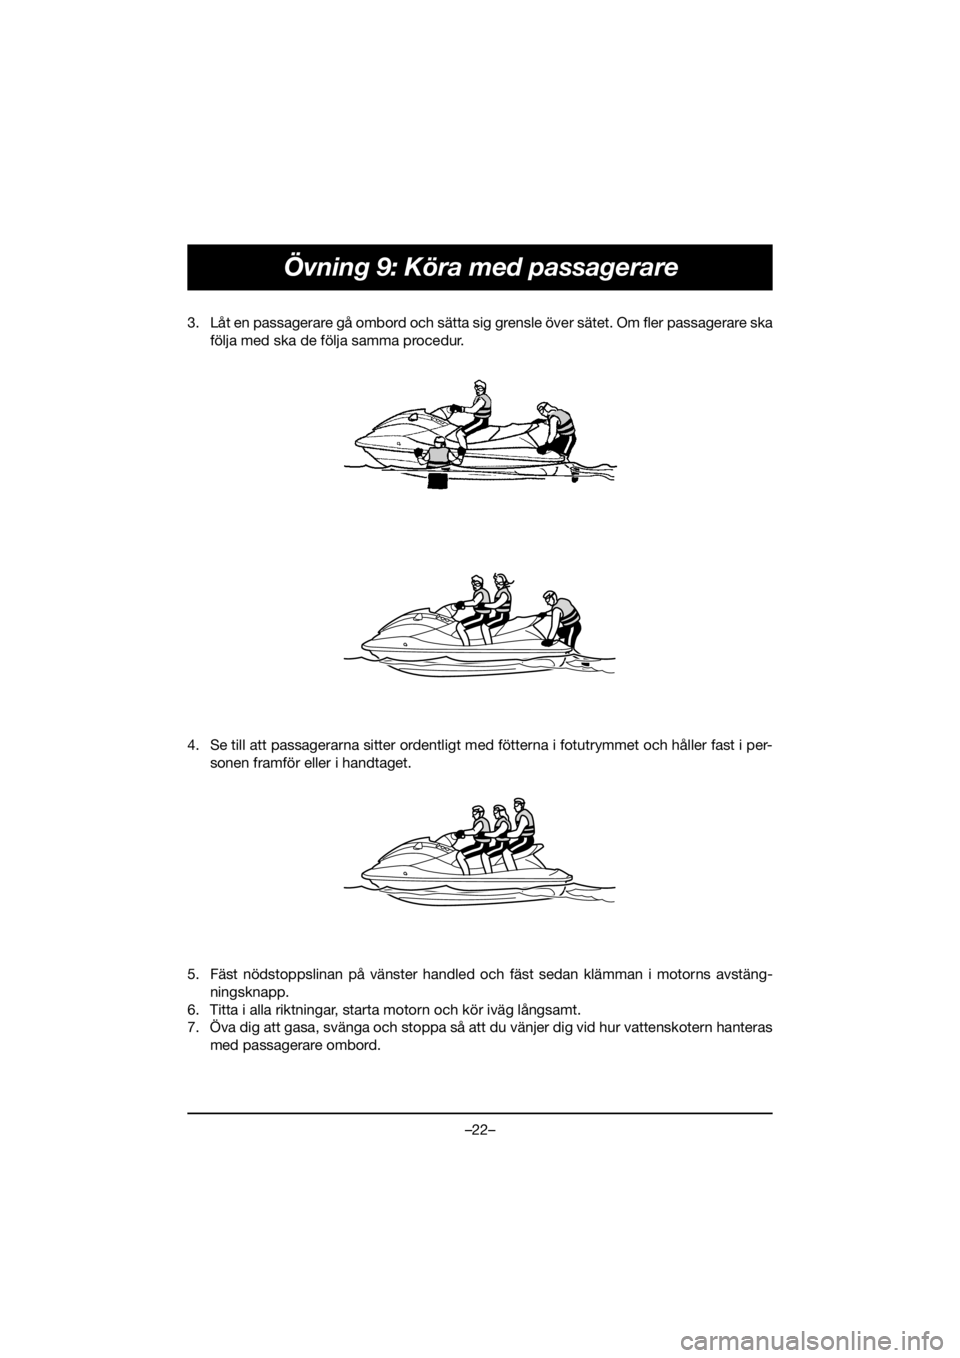 YAMAHA EXR 2020  Manuale duso (in Italian) –22–
Övning 9: Köra med passagerare
3. Låt en passagerare gå ombord och sätta sig grensle över sätet. Om fler passagerare ska
följa med ska de följa samma procedur. 
4. Se till att passag